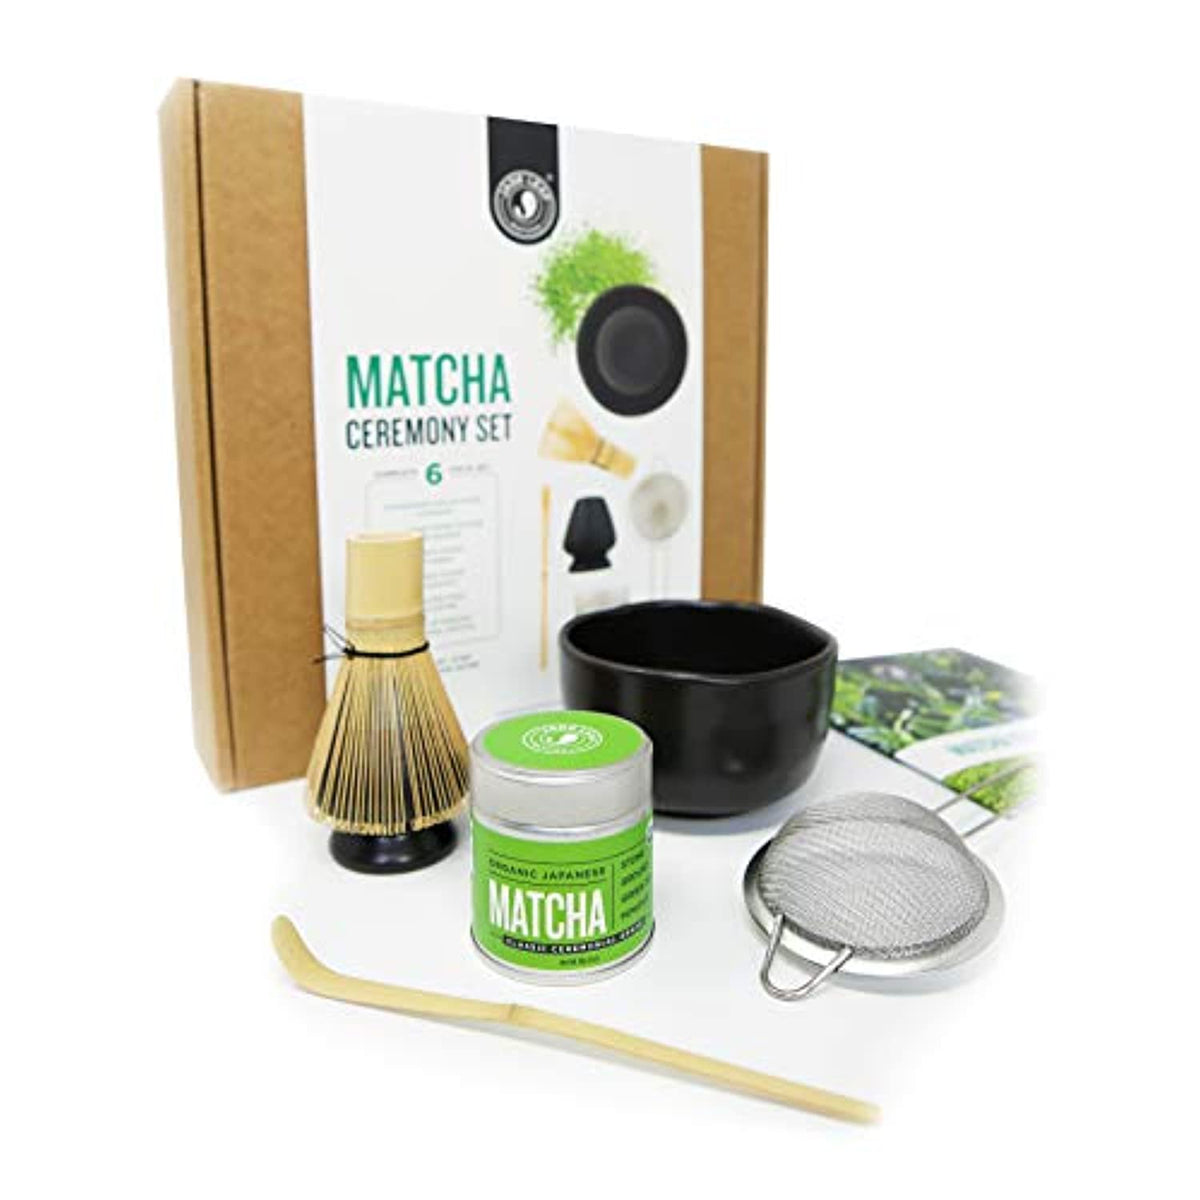 Jade Leaf Matcha - Complere Ceremony Gift Set